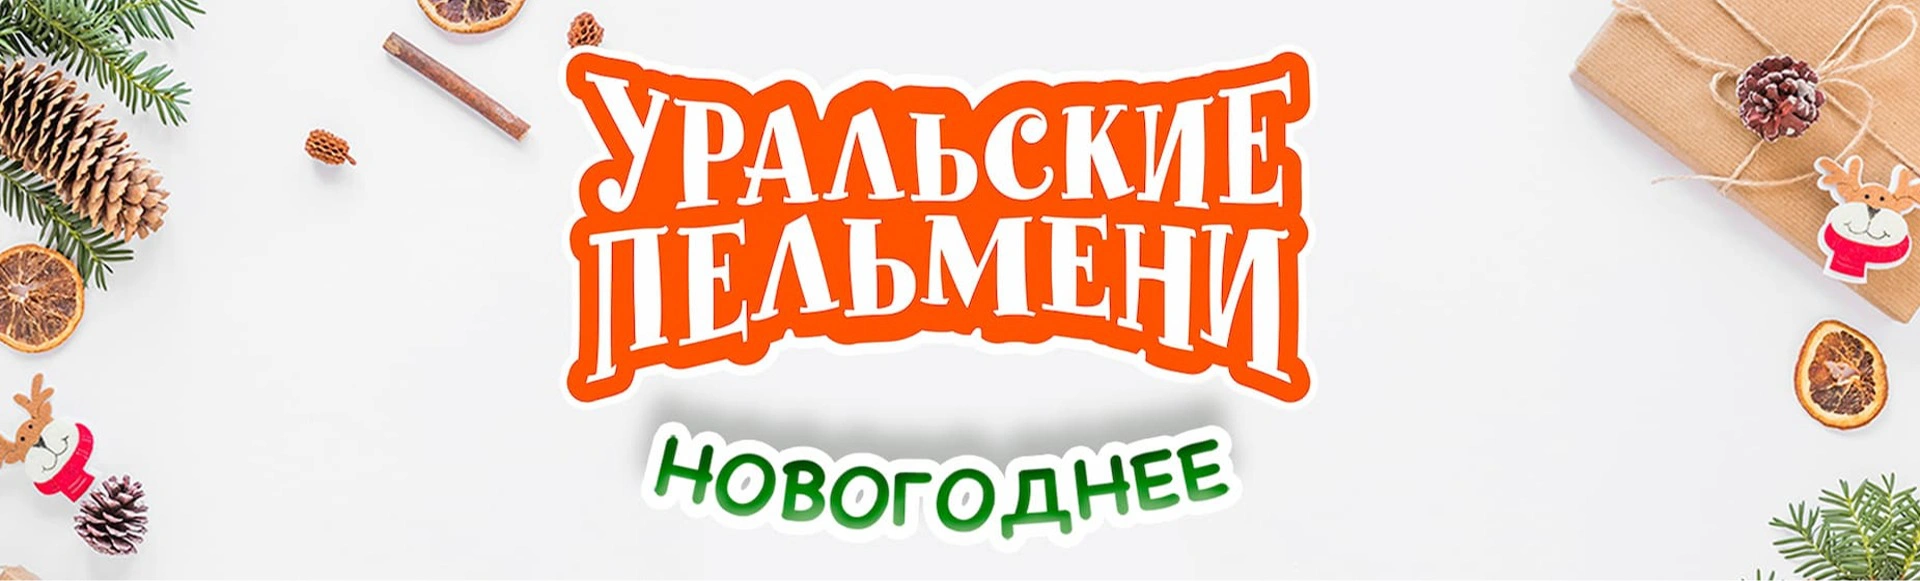 ТВ съемка шоу Уральские Пельмени «Визги шампанского»